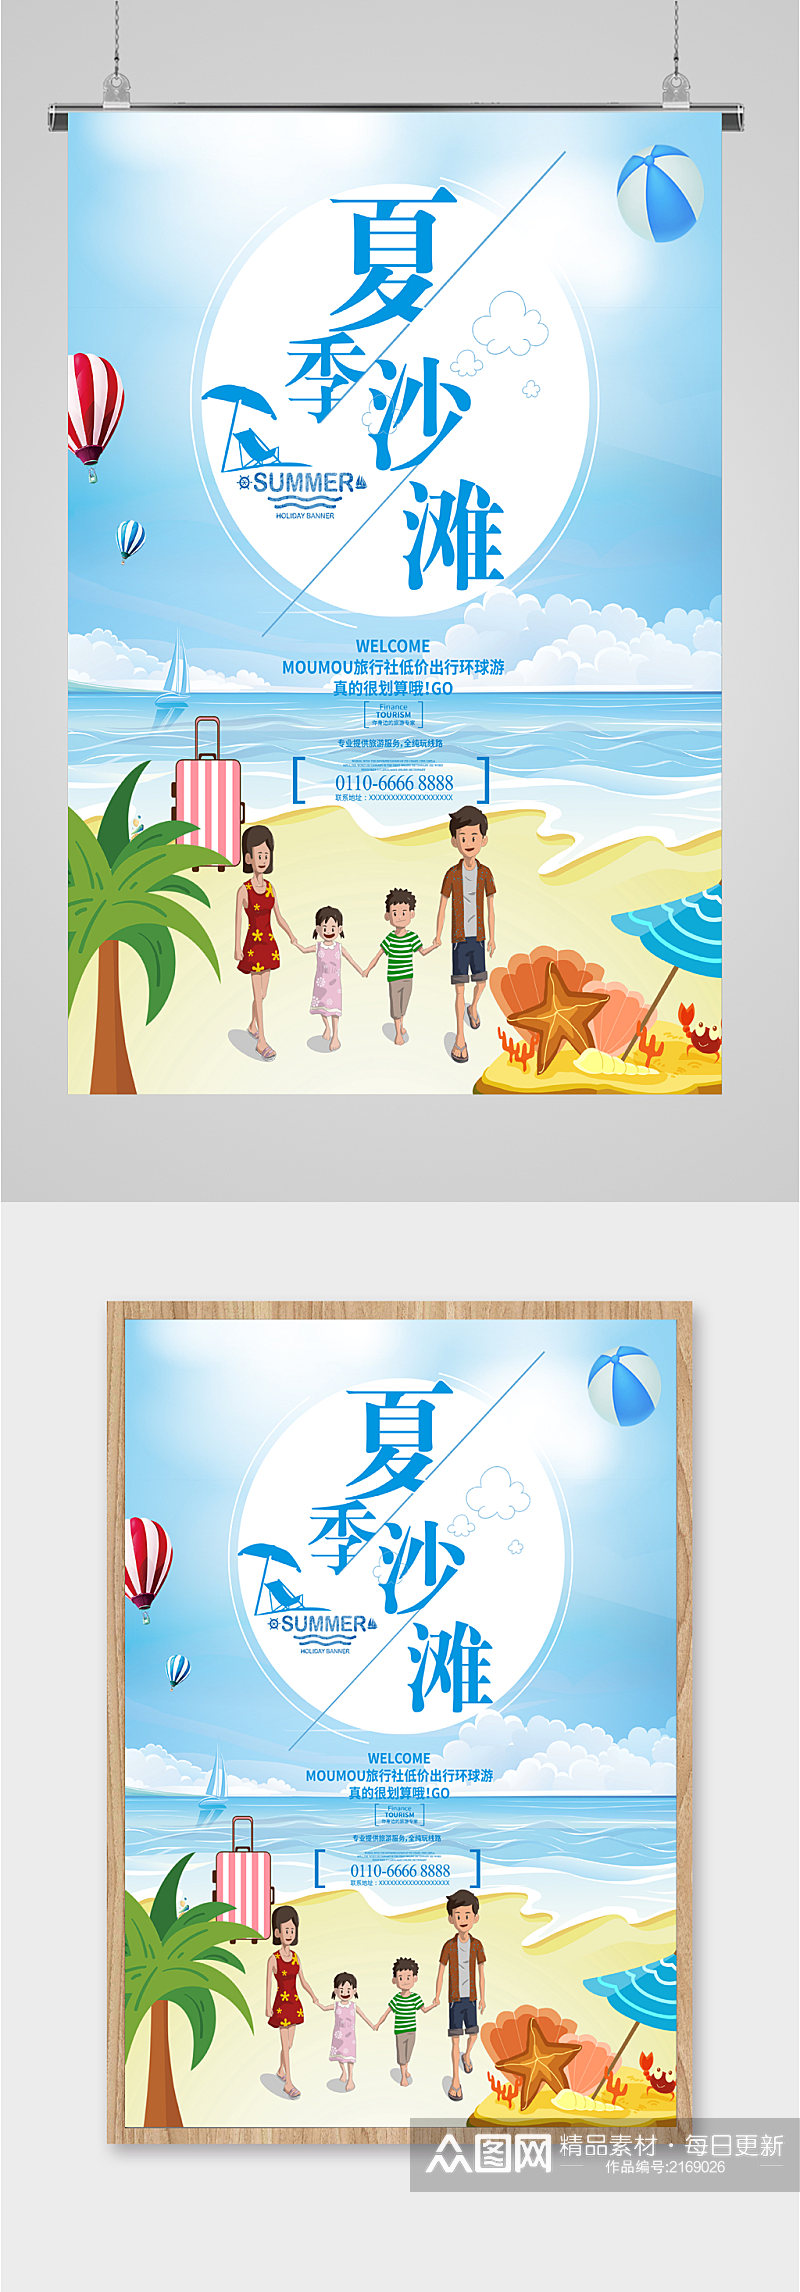 夏季沙滩旅游海报素材